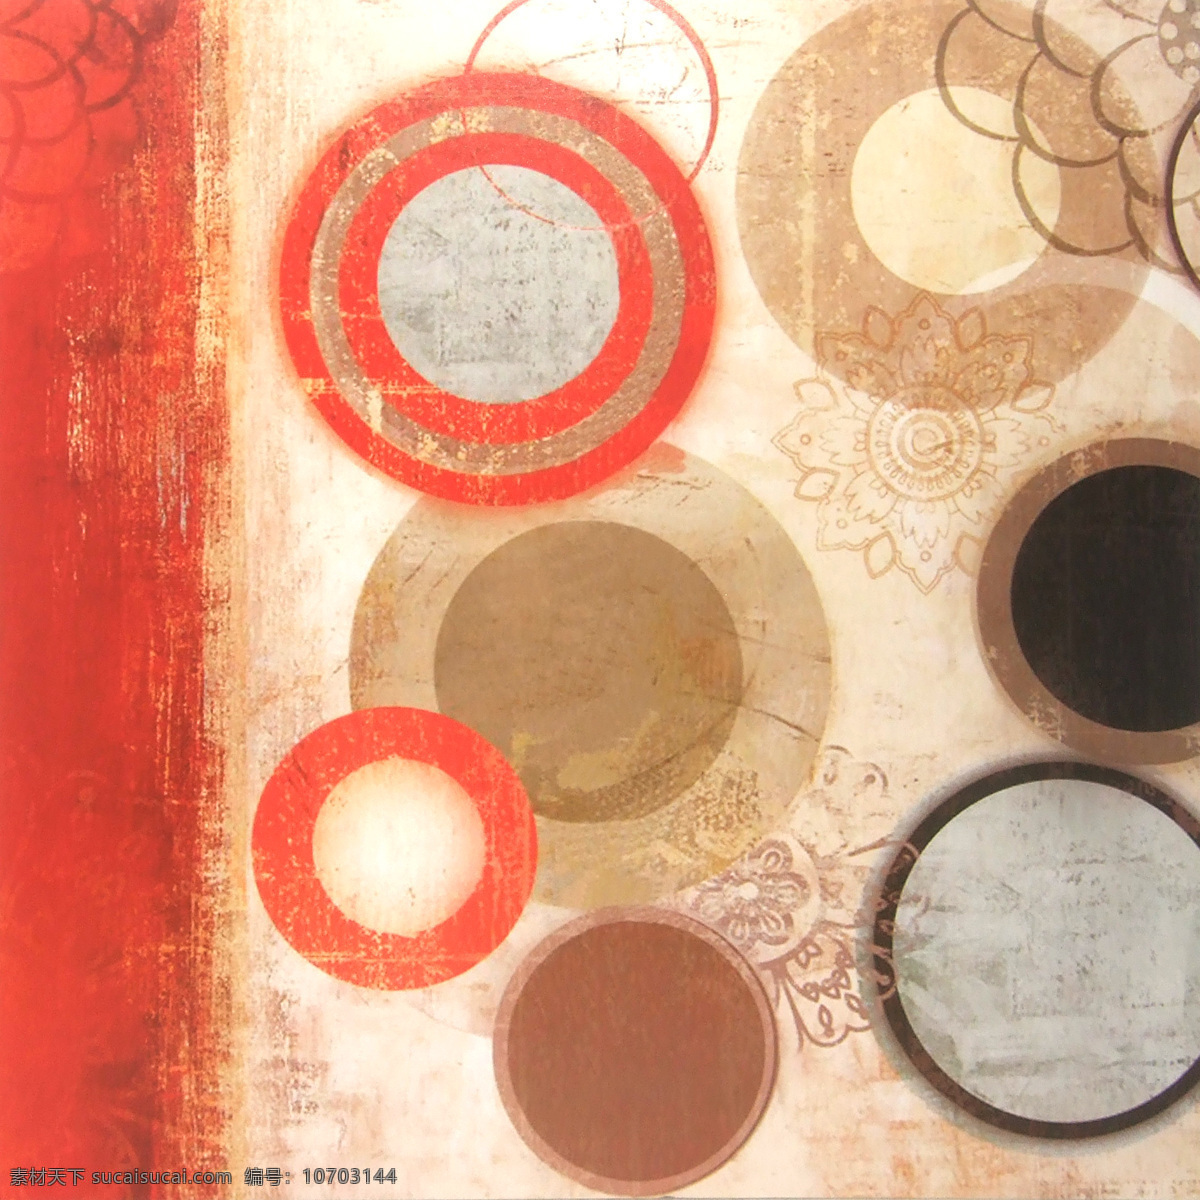 抽象免费下载 复古 橘红色 圈圈 仿旧花纹 装饰素材 无框画